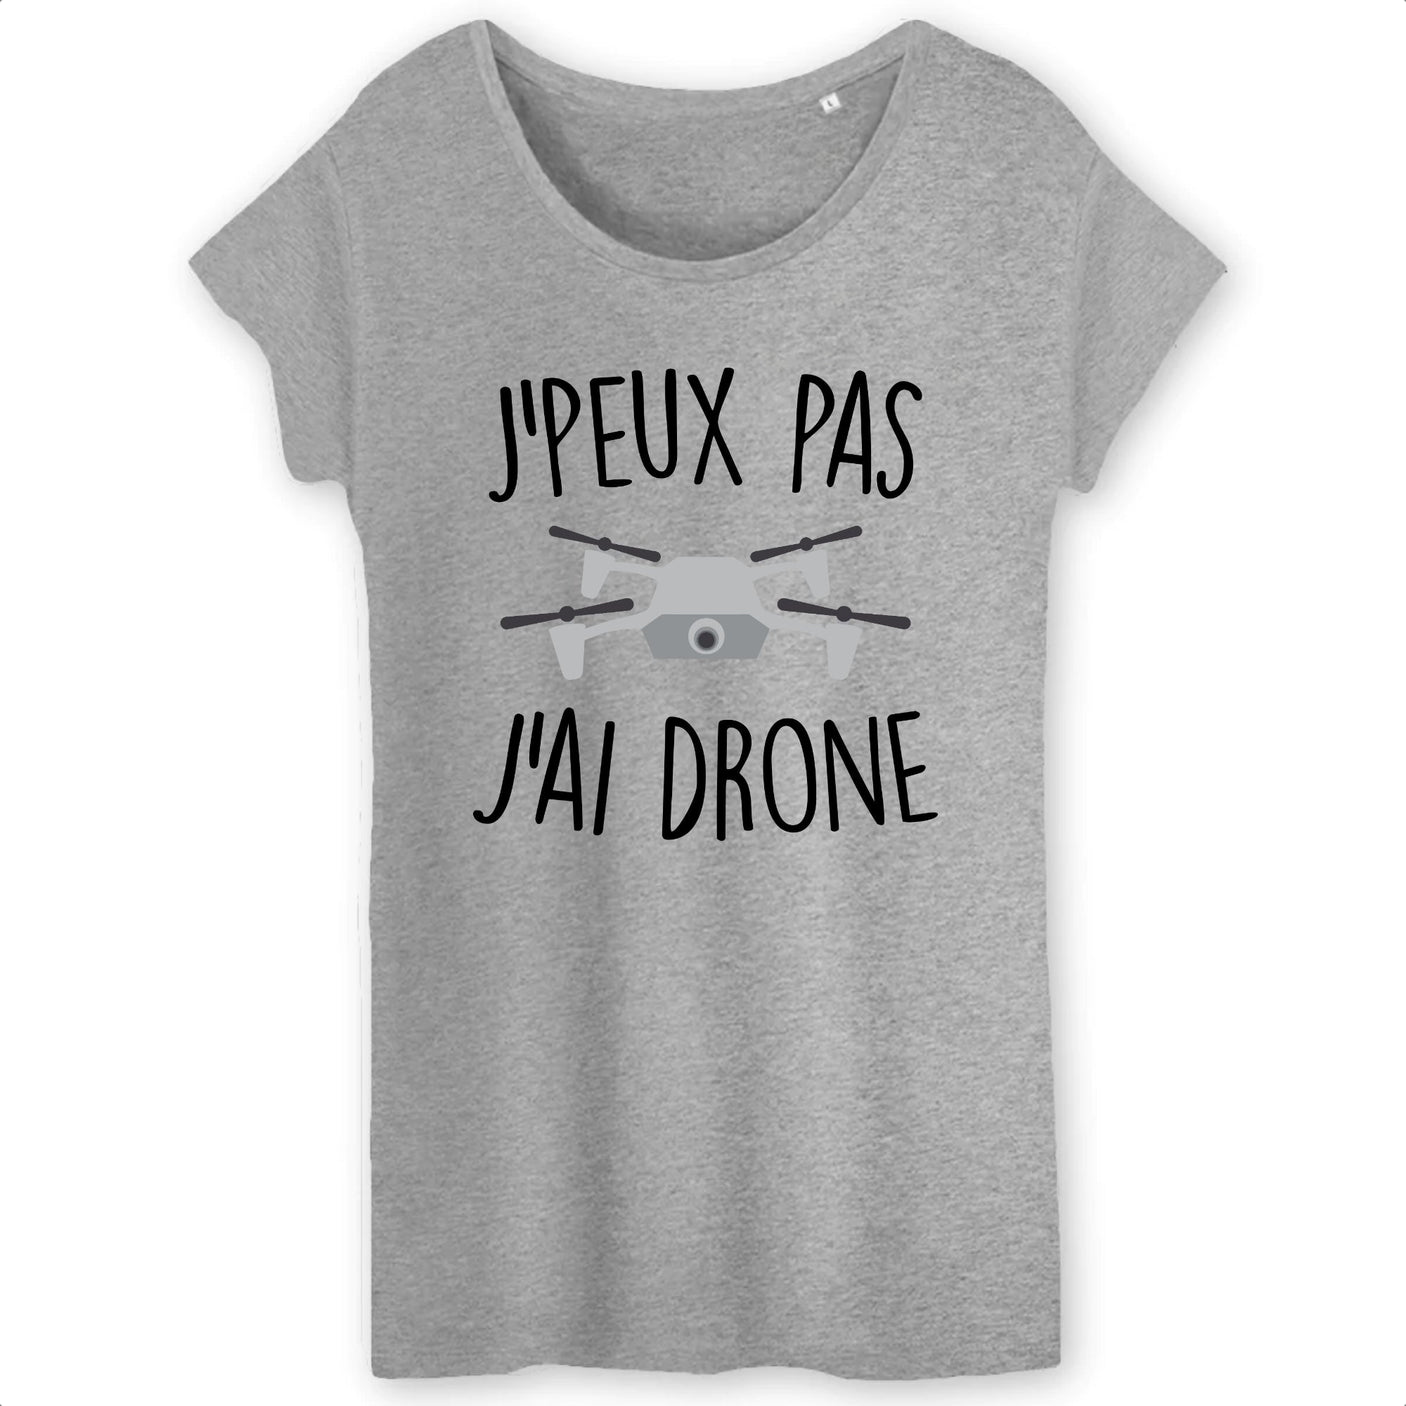 T-Shirt Femme J'peux pas j'ai drone 